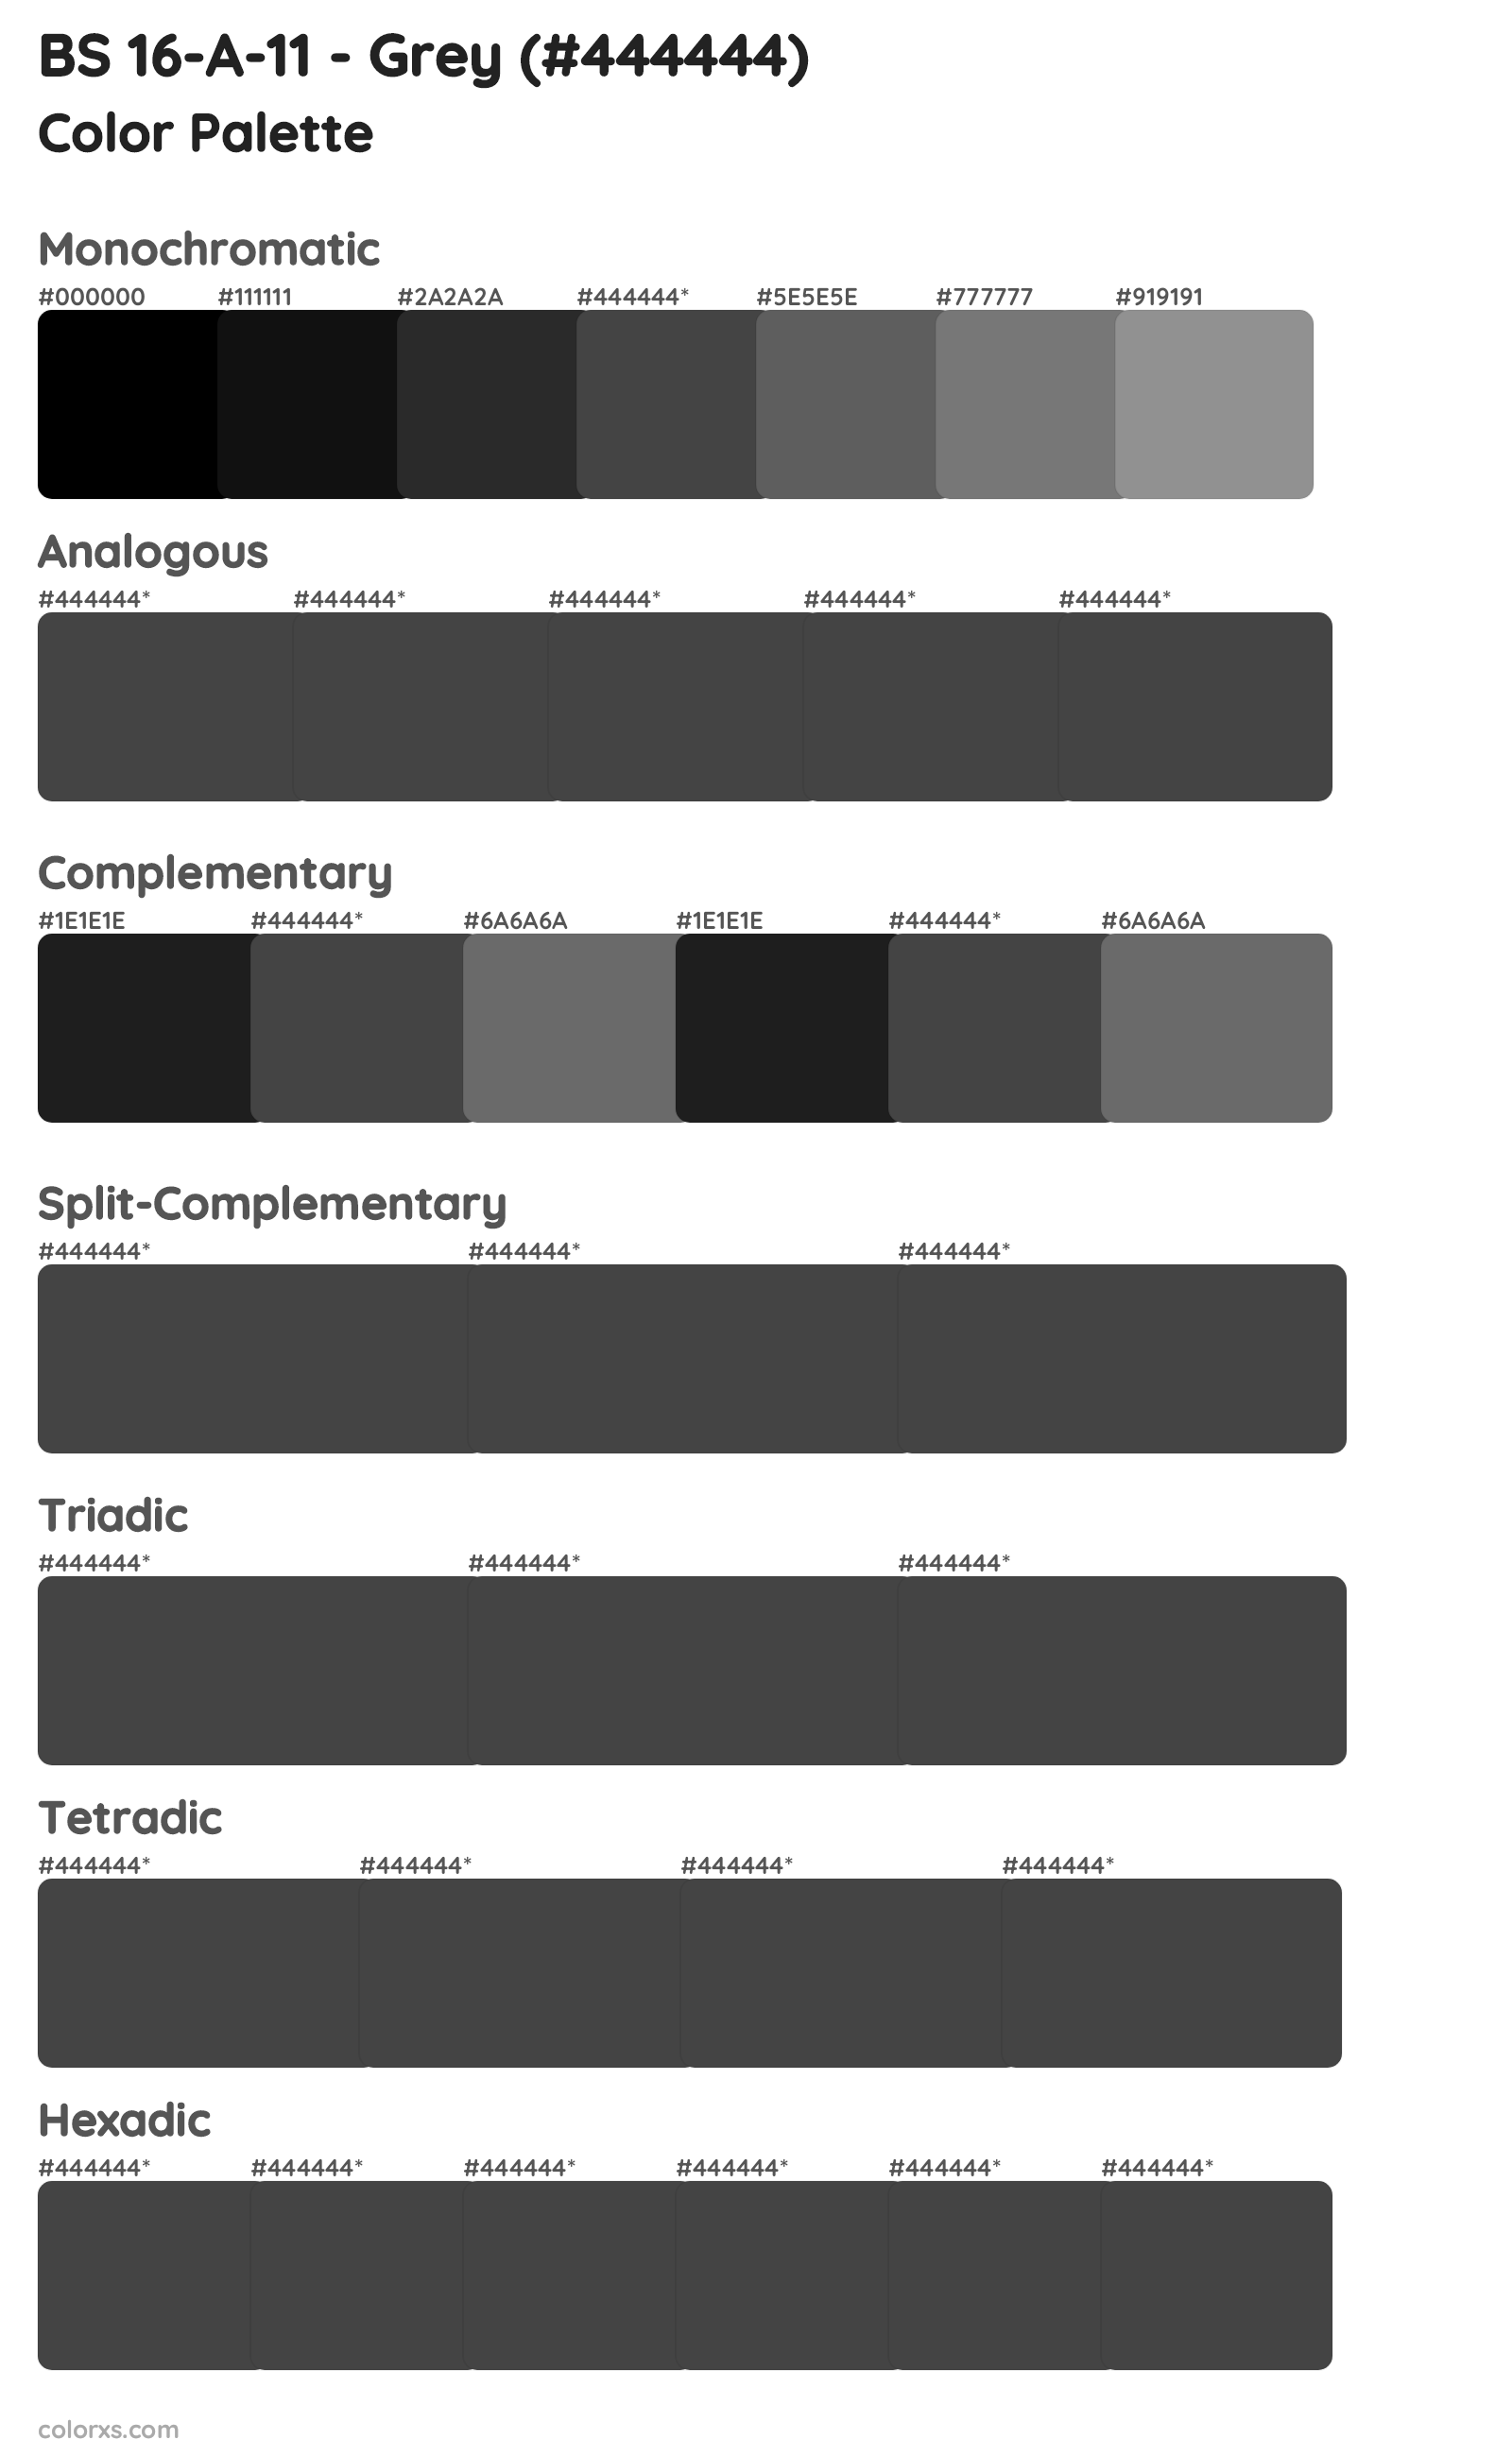 BS 16-A-11 - Grey Color Scheme Palettes